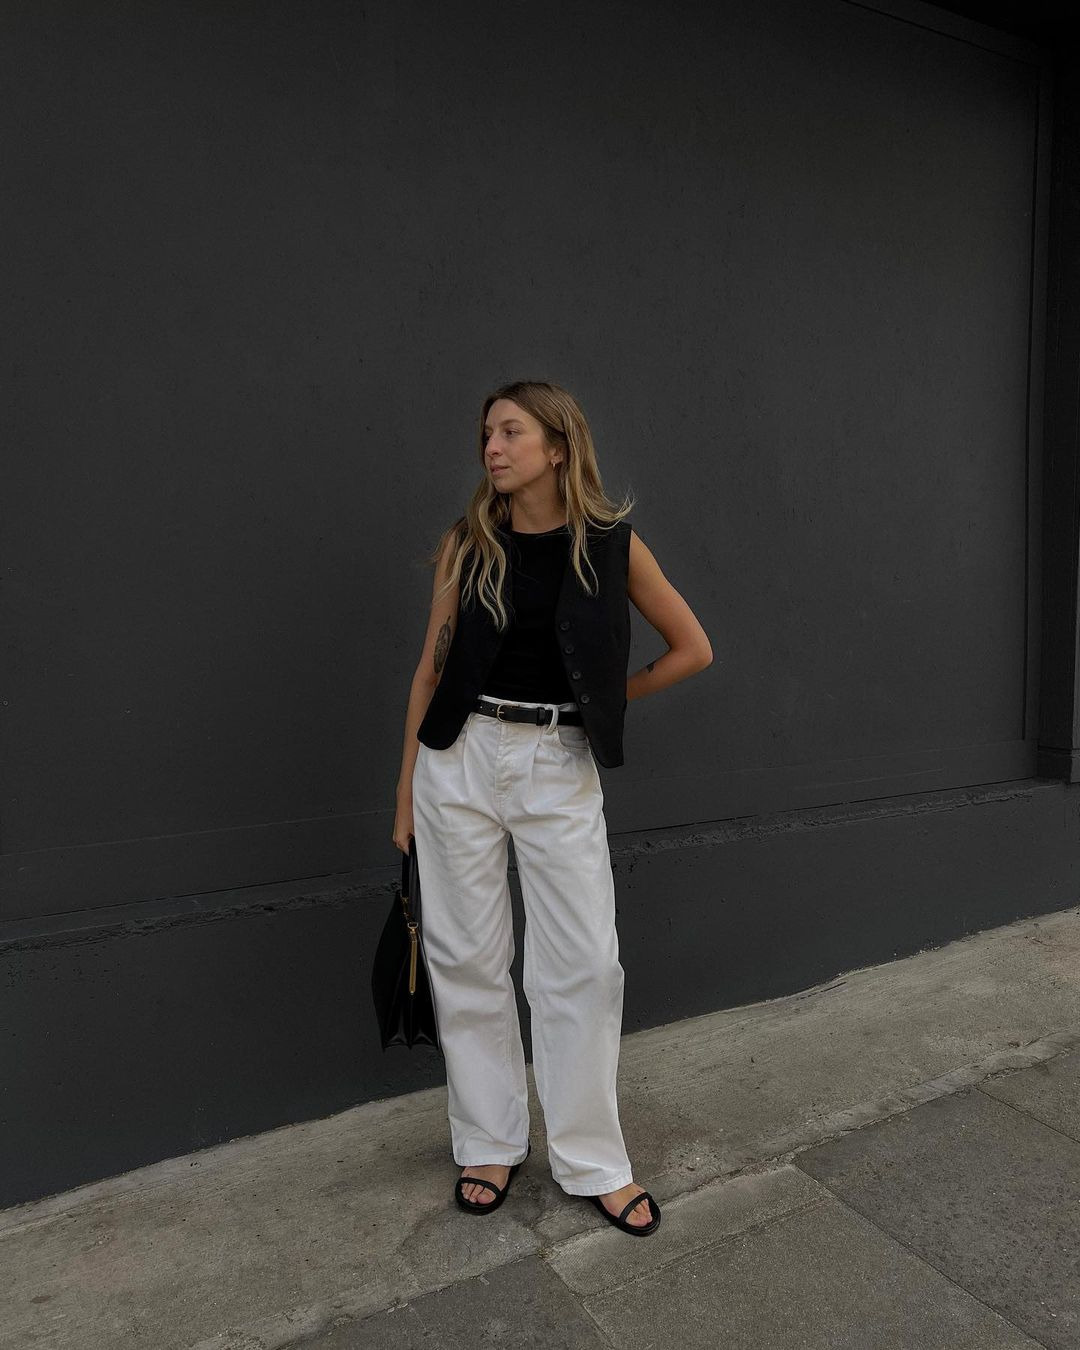 Haftanın Moda Instagram'ları: Zamansız İkili Siyah ve Beyaz